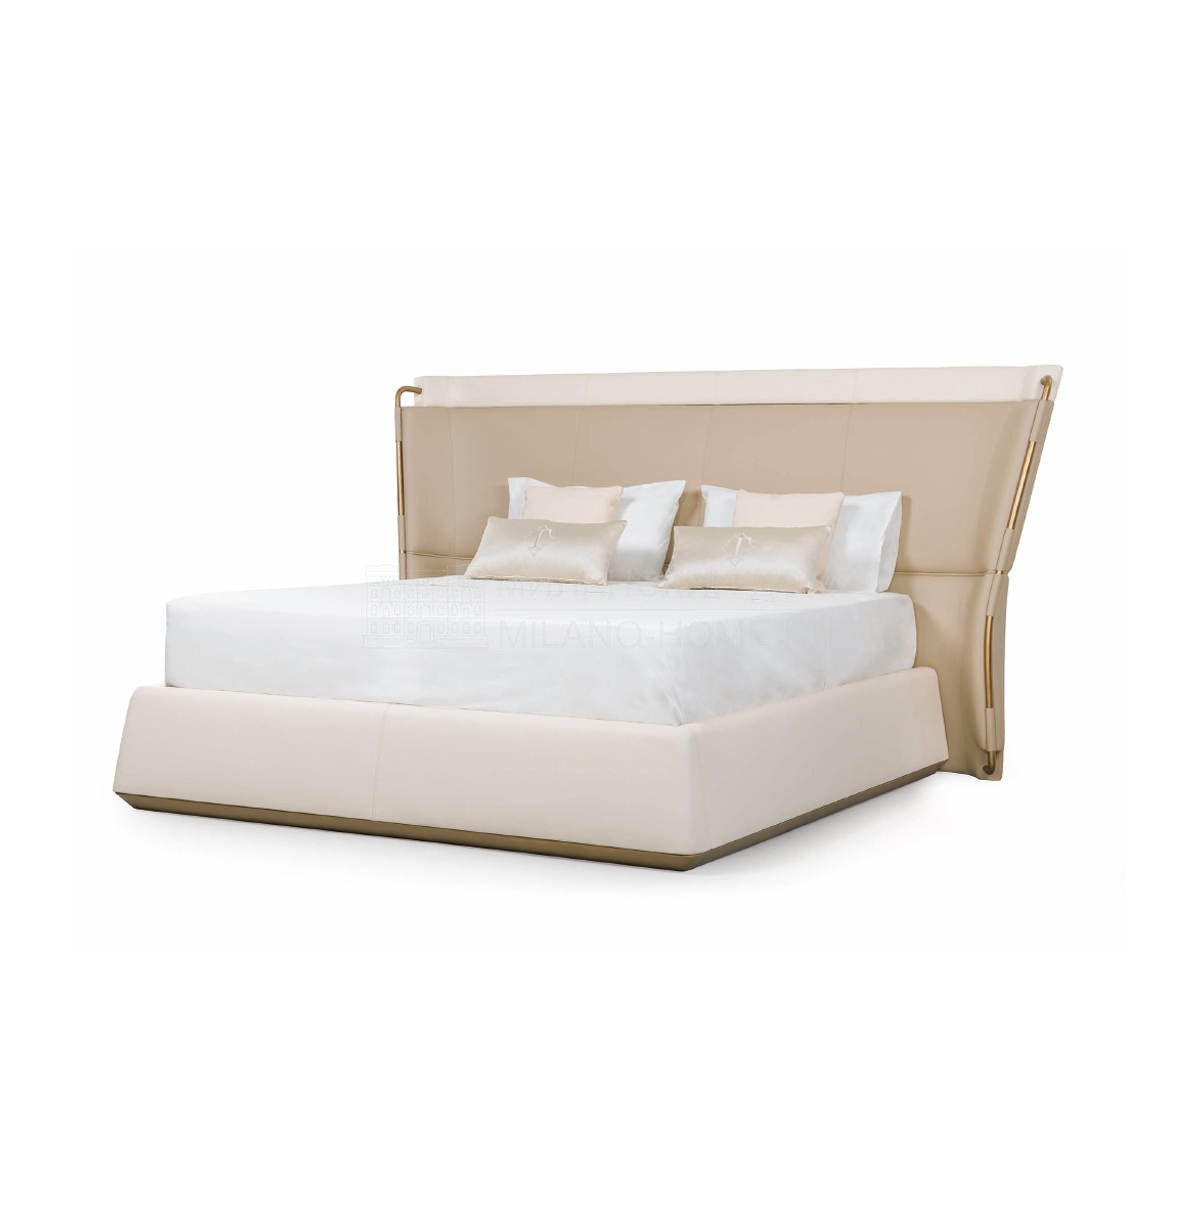 Двуспальная кровать Melting Light bed из Италии фабрики TURRI